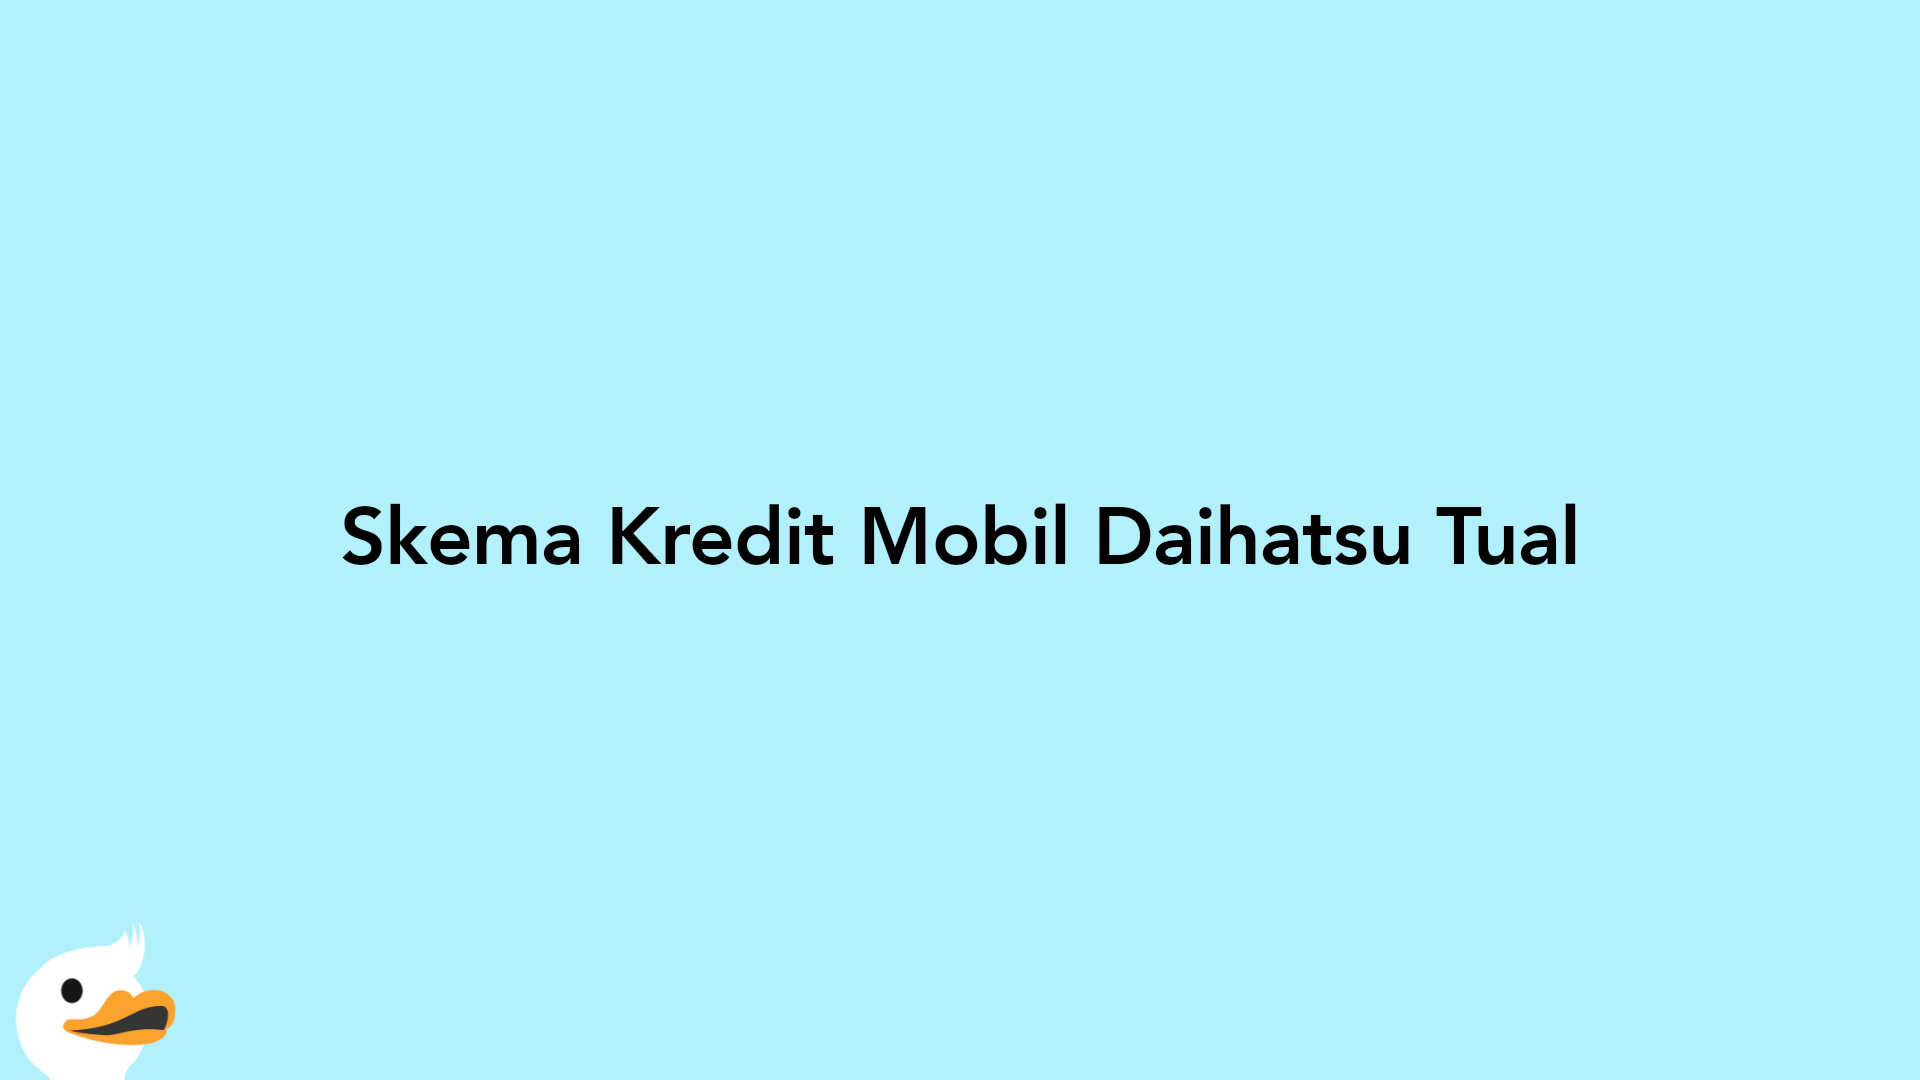 Skema Kredit Mobil Daihatsu Tual